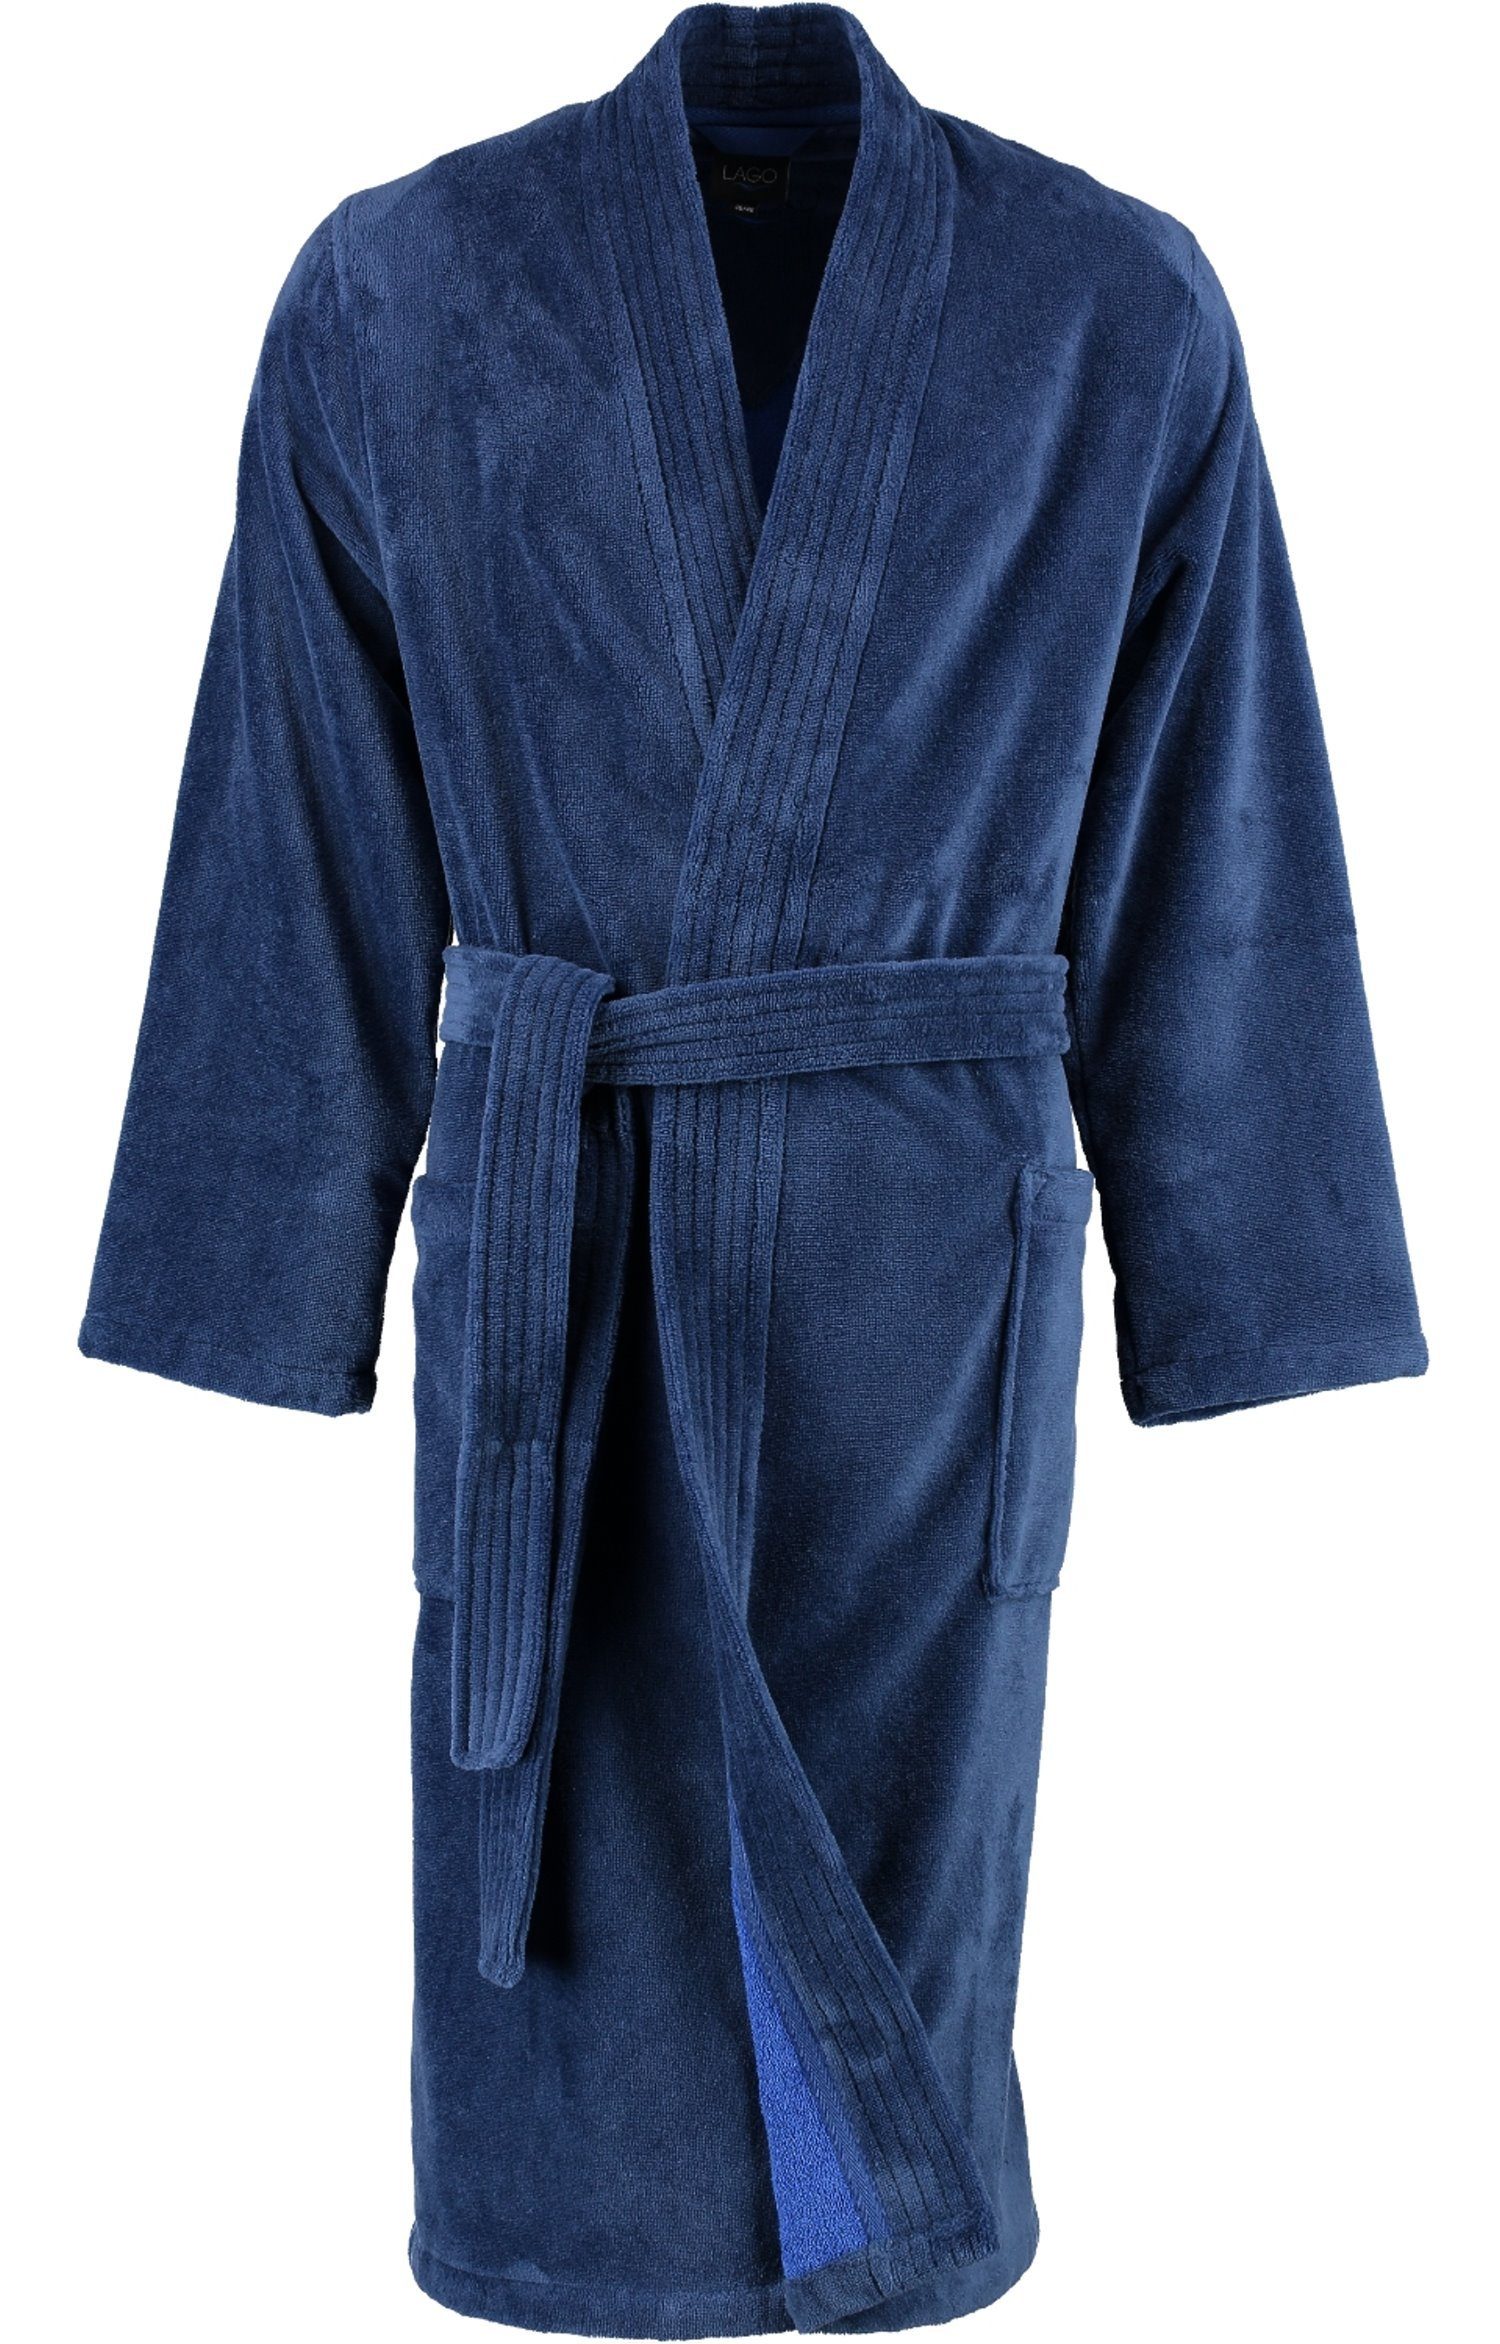 Cawö Home Cawö Herrenbademantel Herren Bademantel Kimonoform, Baumwollmischung, Kimono-Kragen, Gürtel, Velours Qualität nachtblau | 